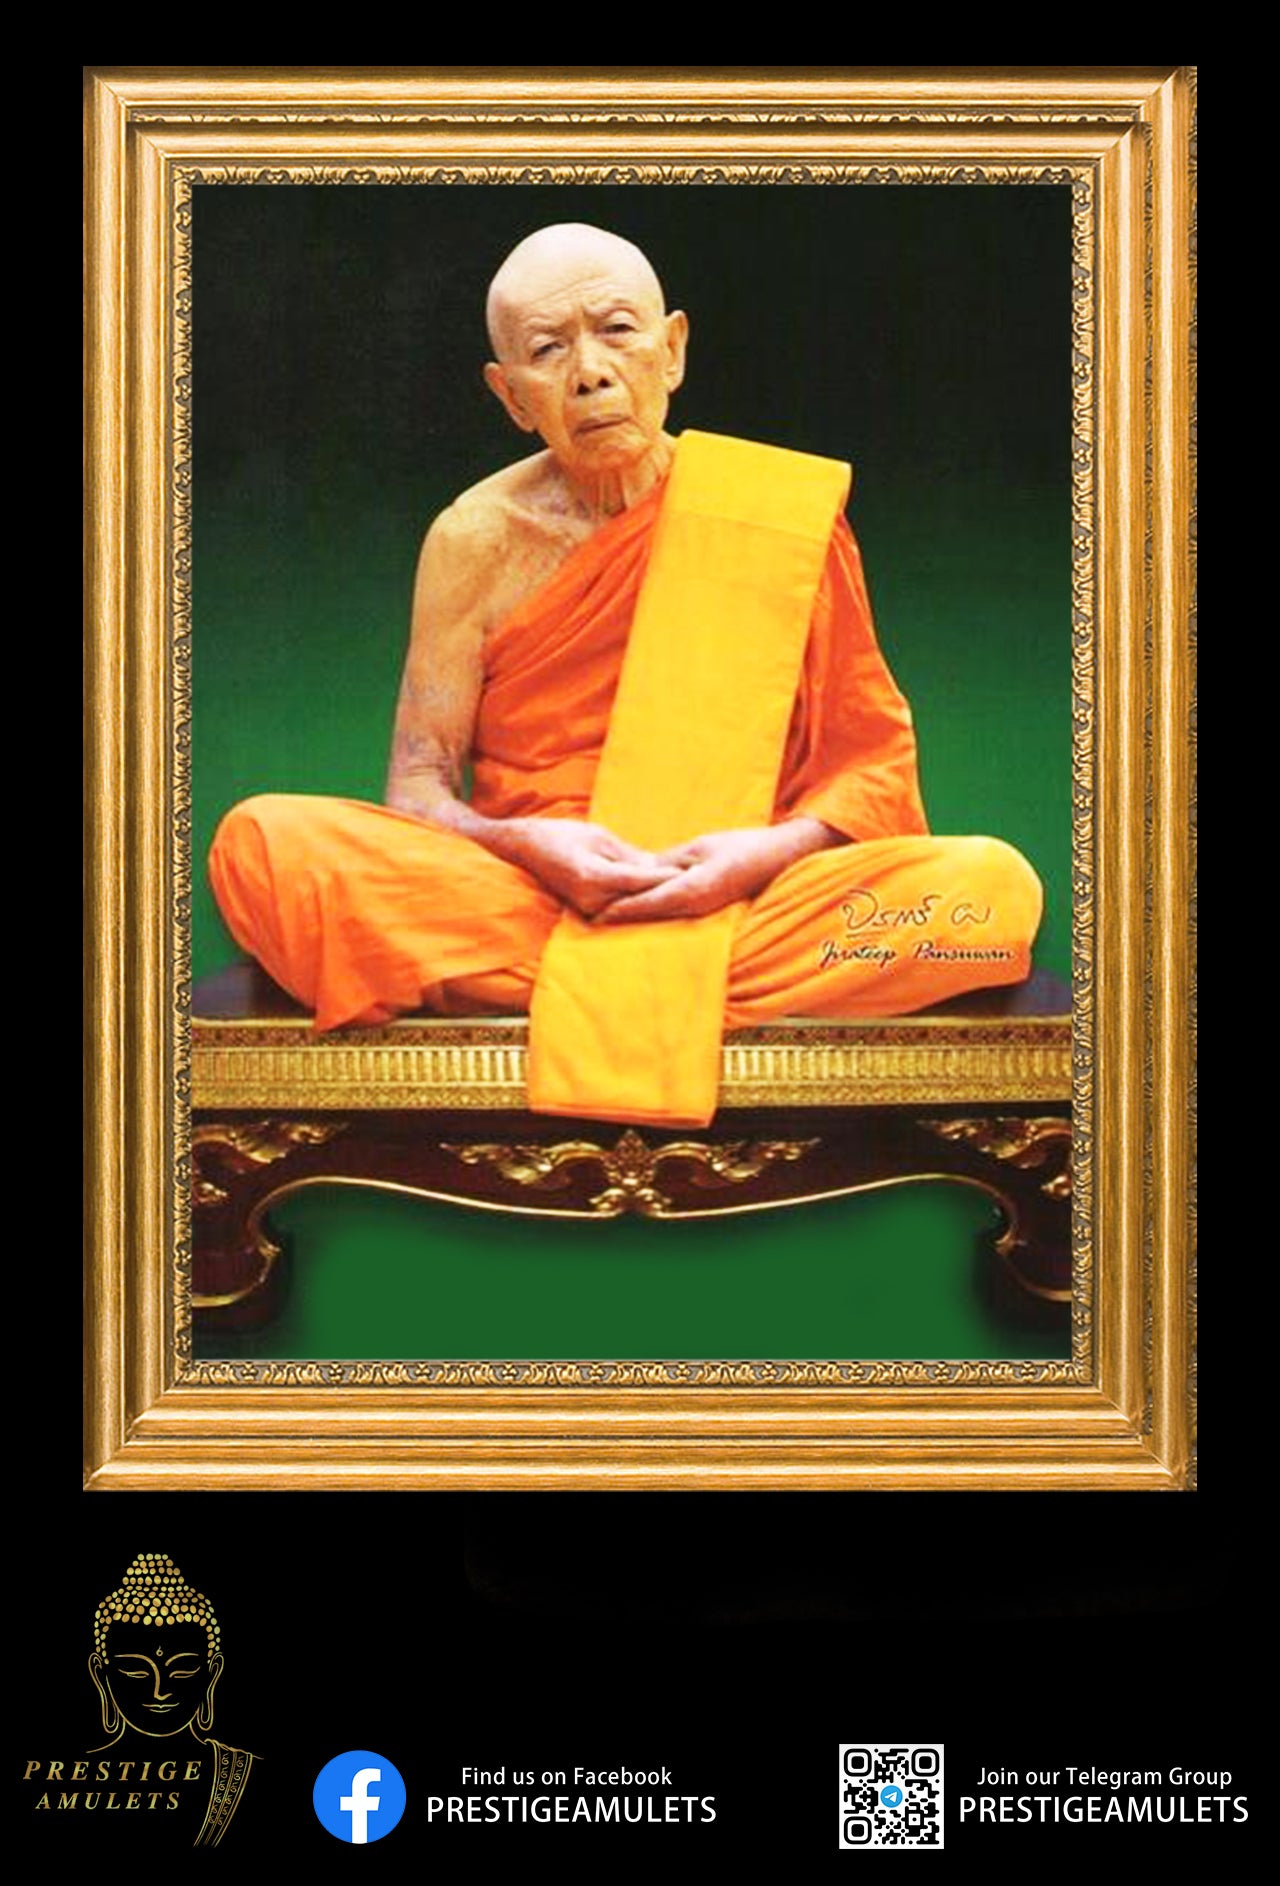 Luang Pu Tim Wat Lahan Rai - BE 2515 Phra Khring